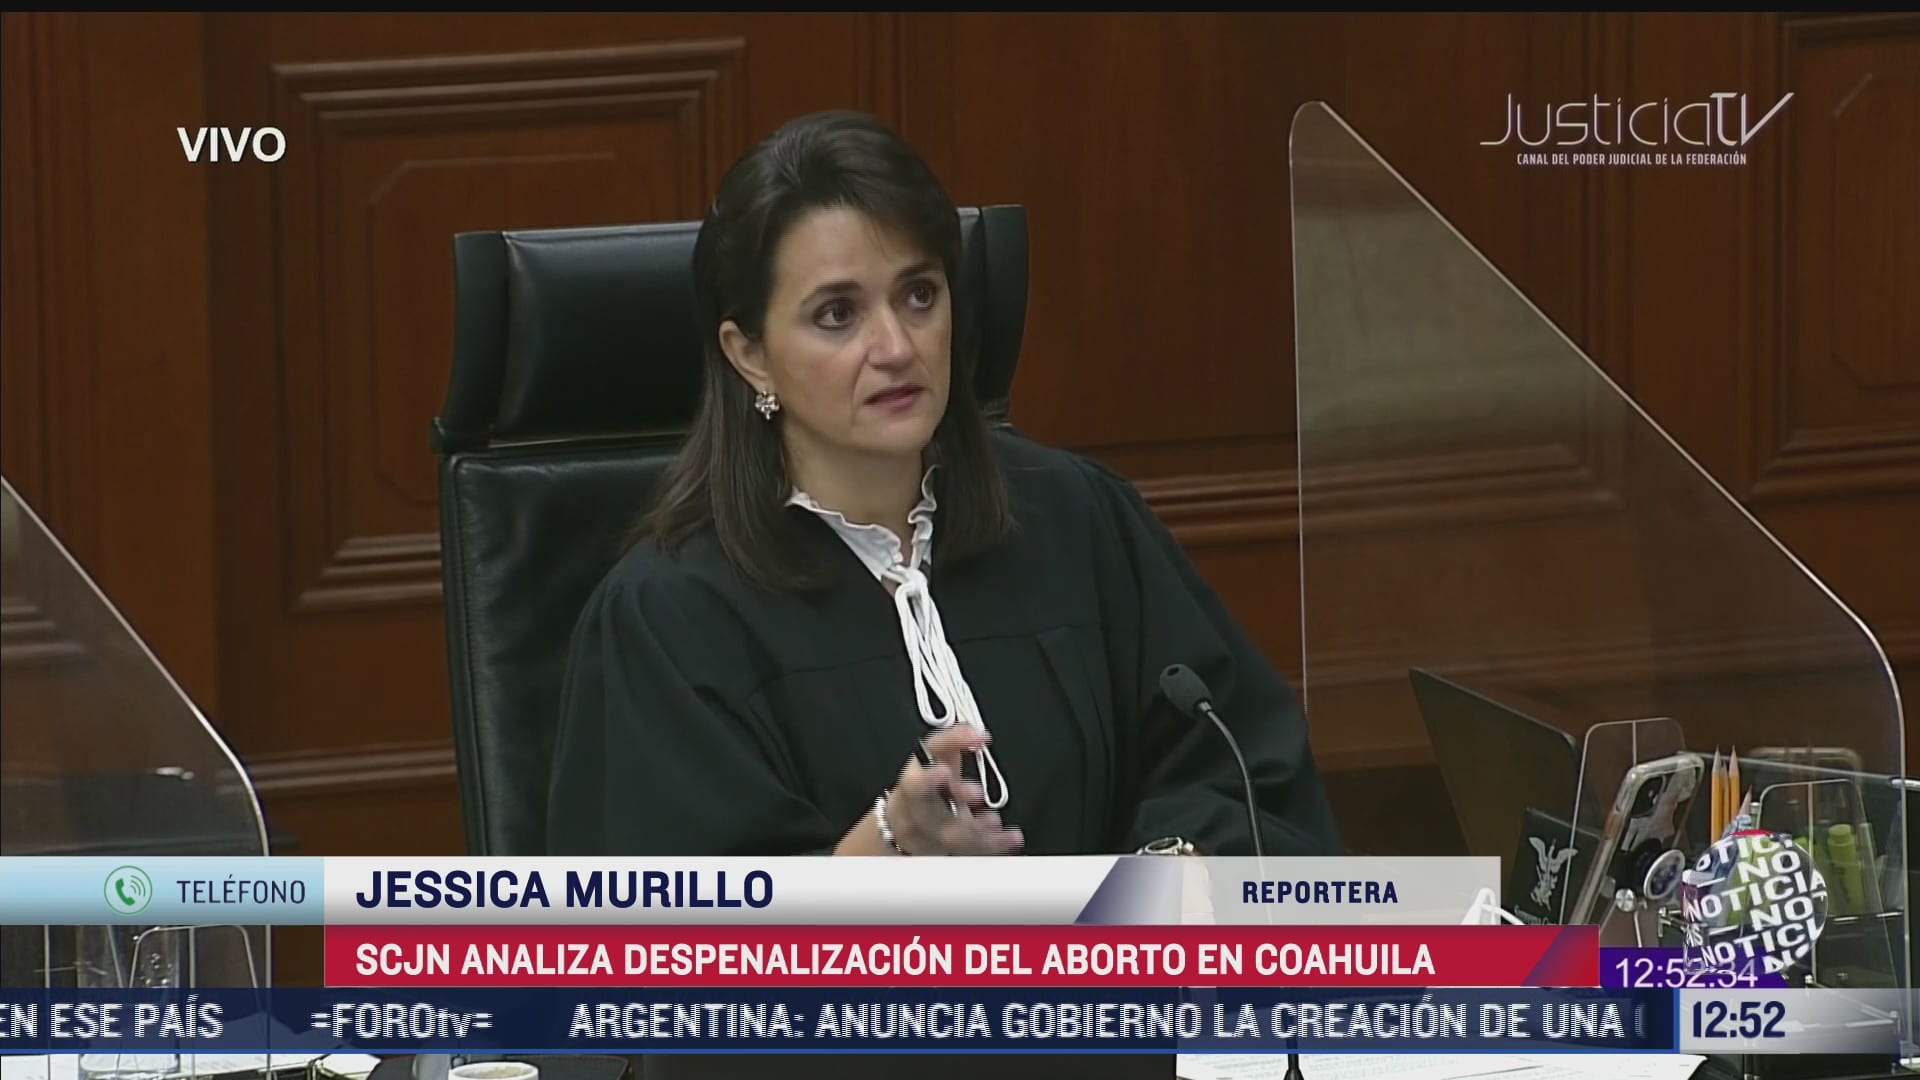 SCJN analiza despenalización del aborto en Coahuila